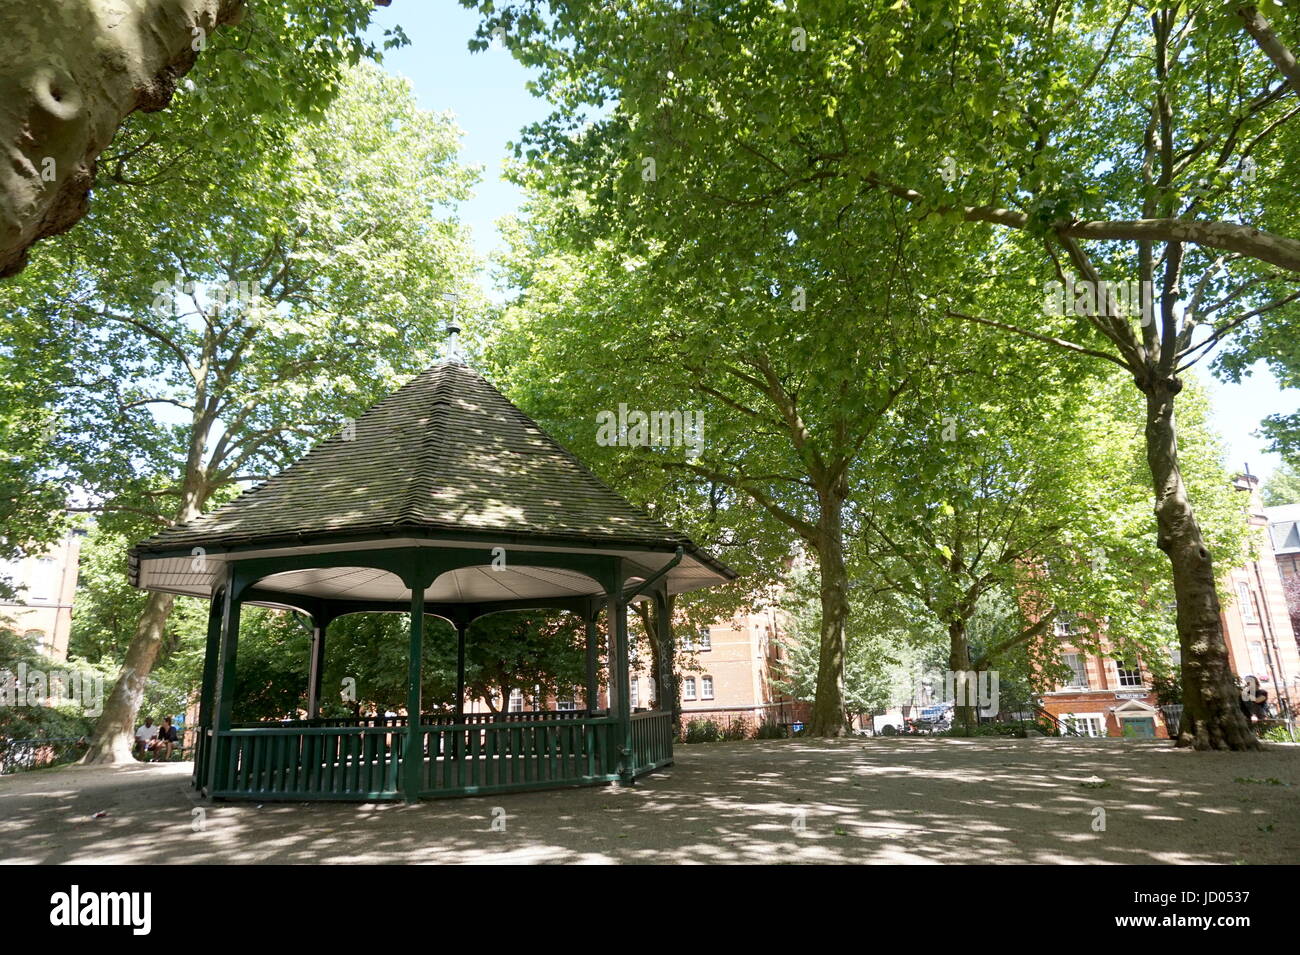 Le petit parc public à Hoxton, Arnold Circus, Londres Banque D'Images